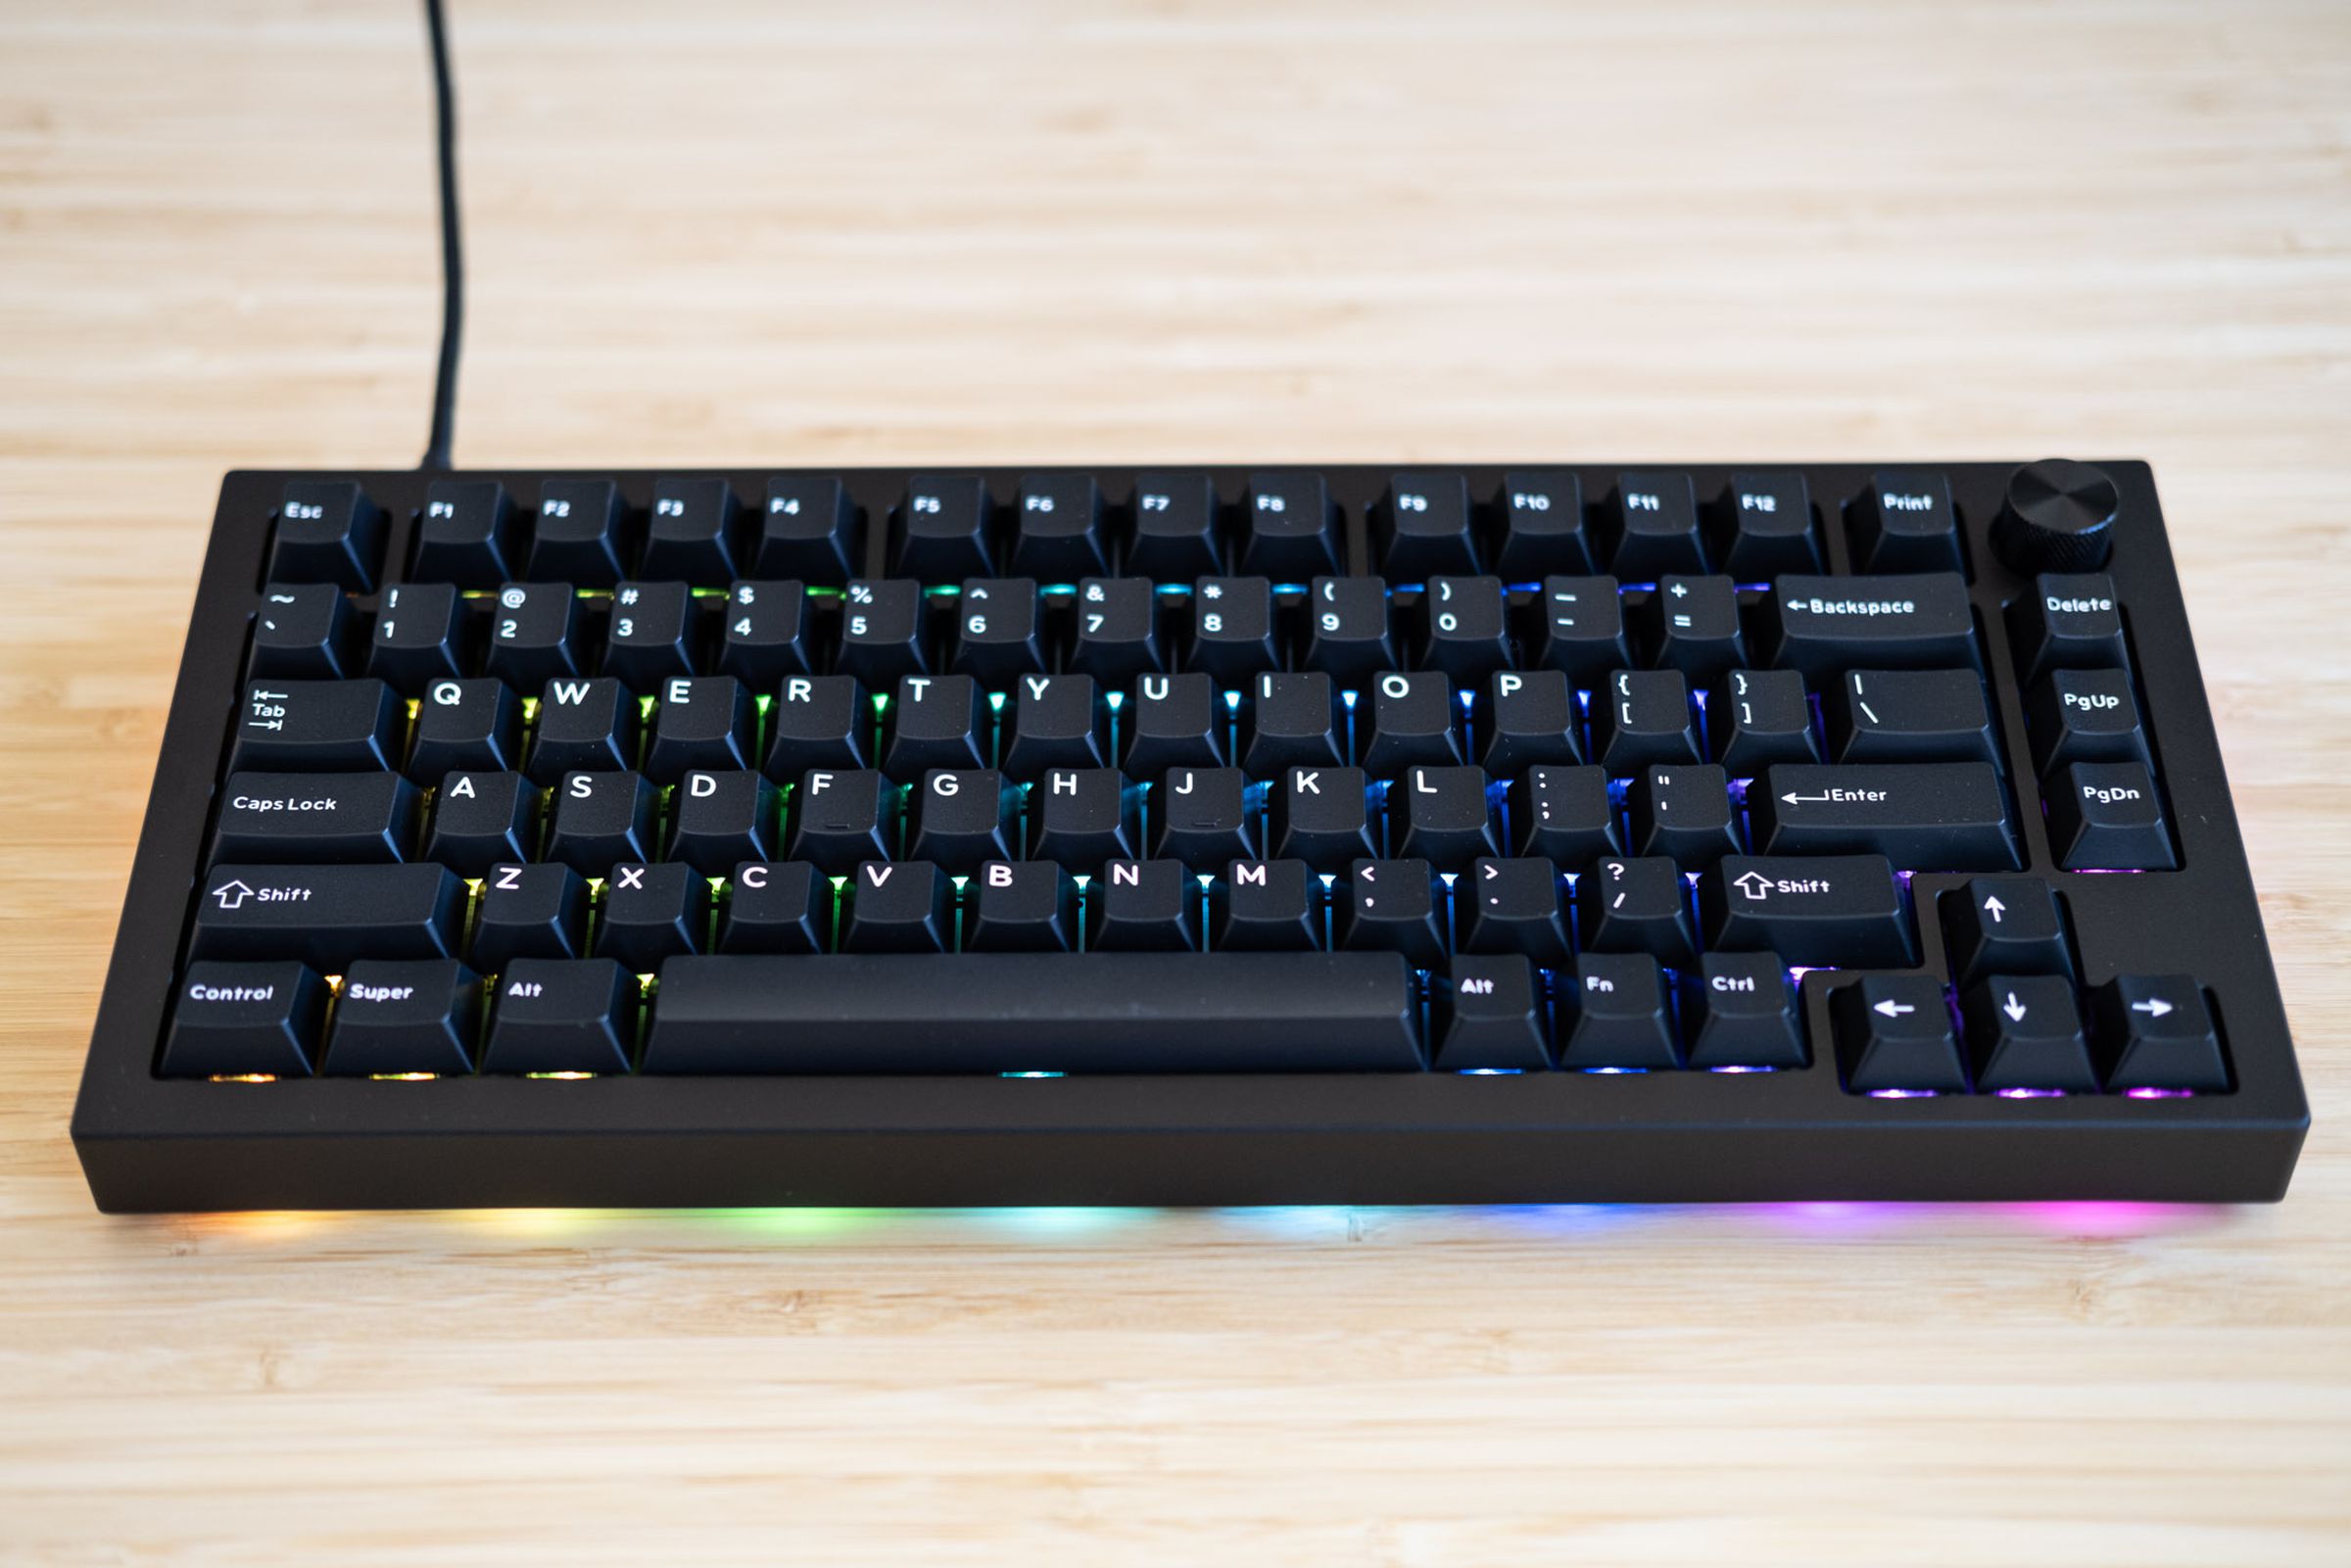 Sense75 keyboard with RGB lighting on.